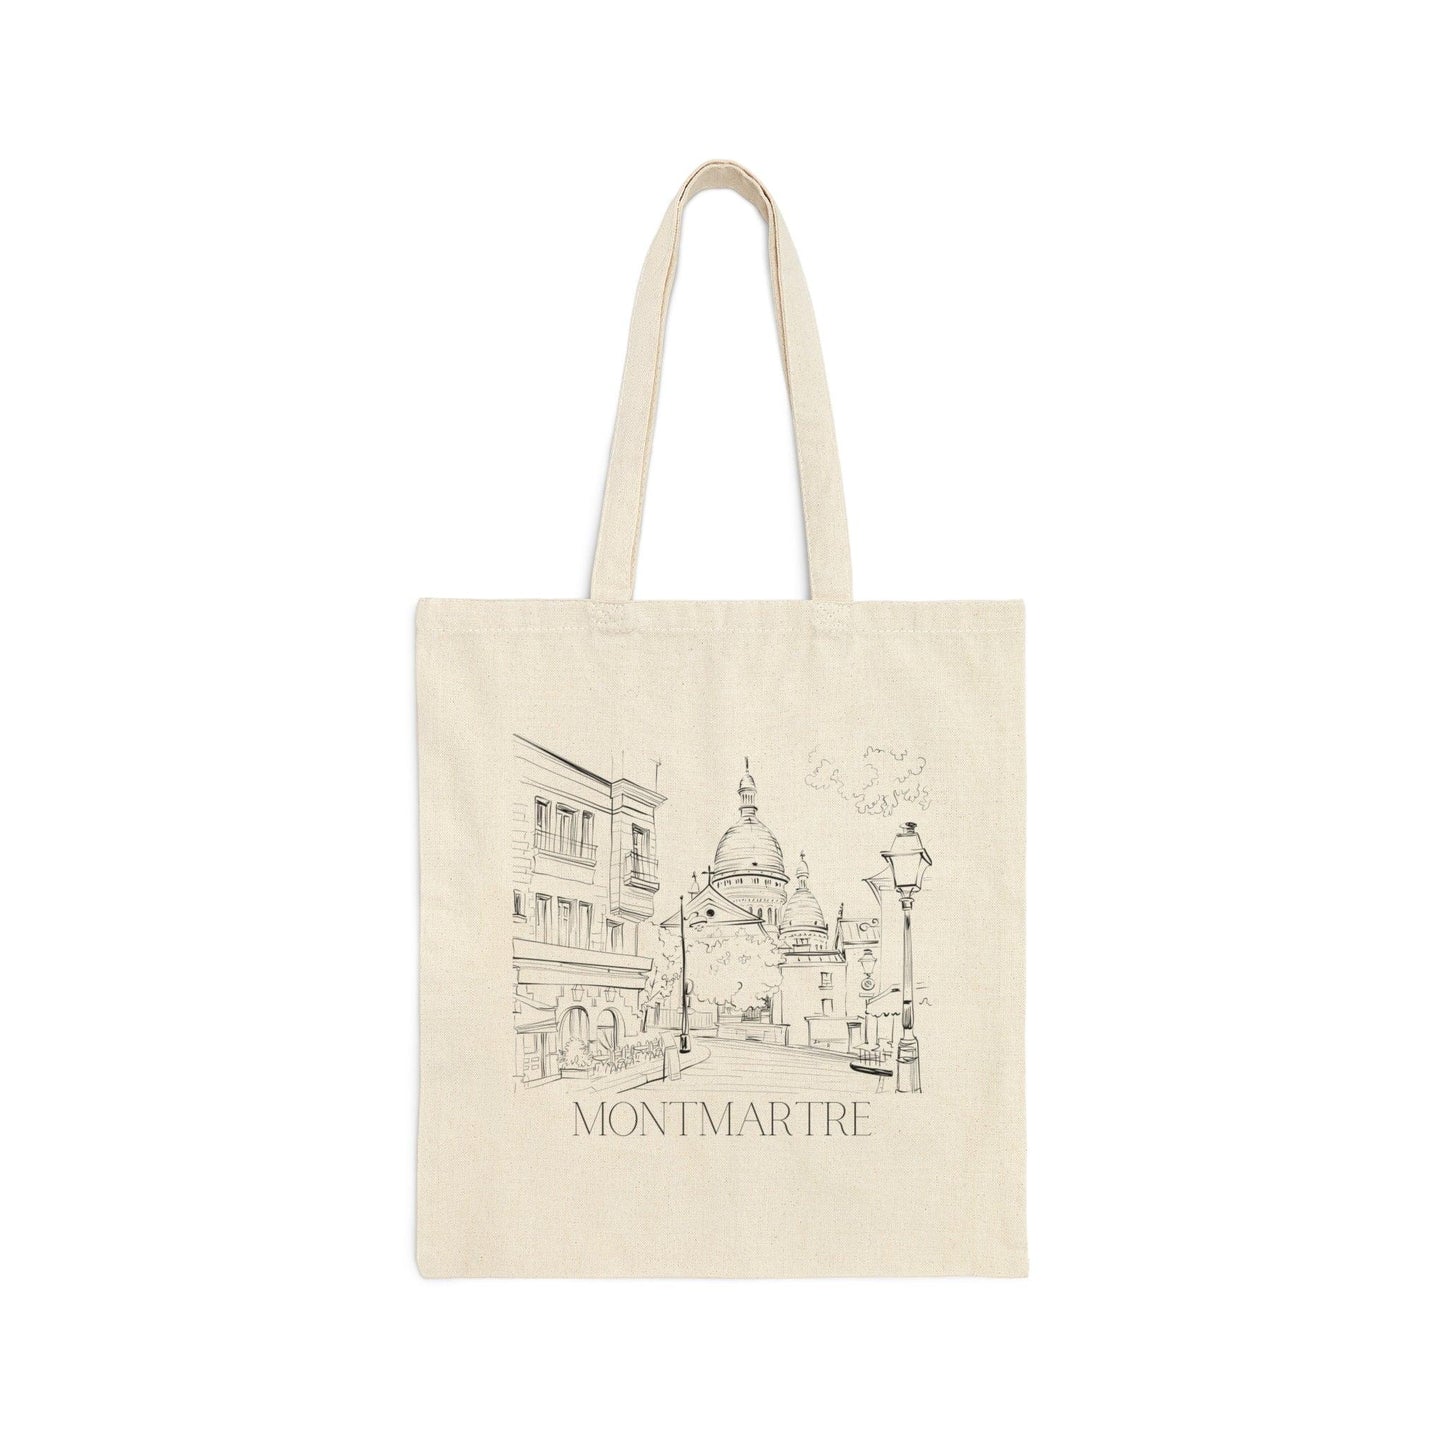 Montmartre Paris Canvas Tote Bag - Departures Print Shop